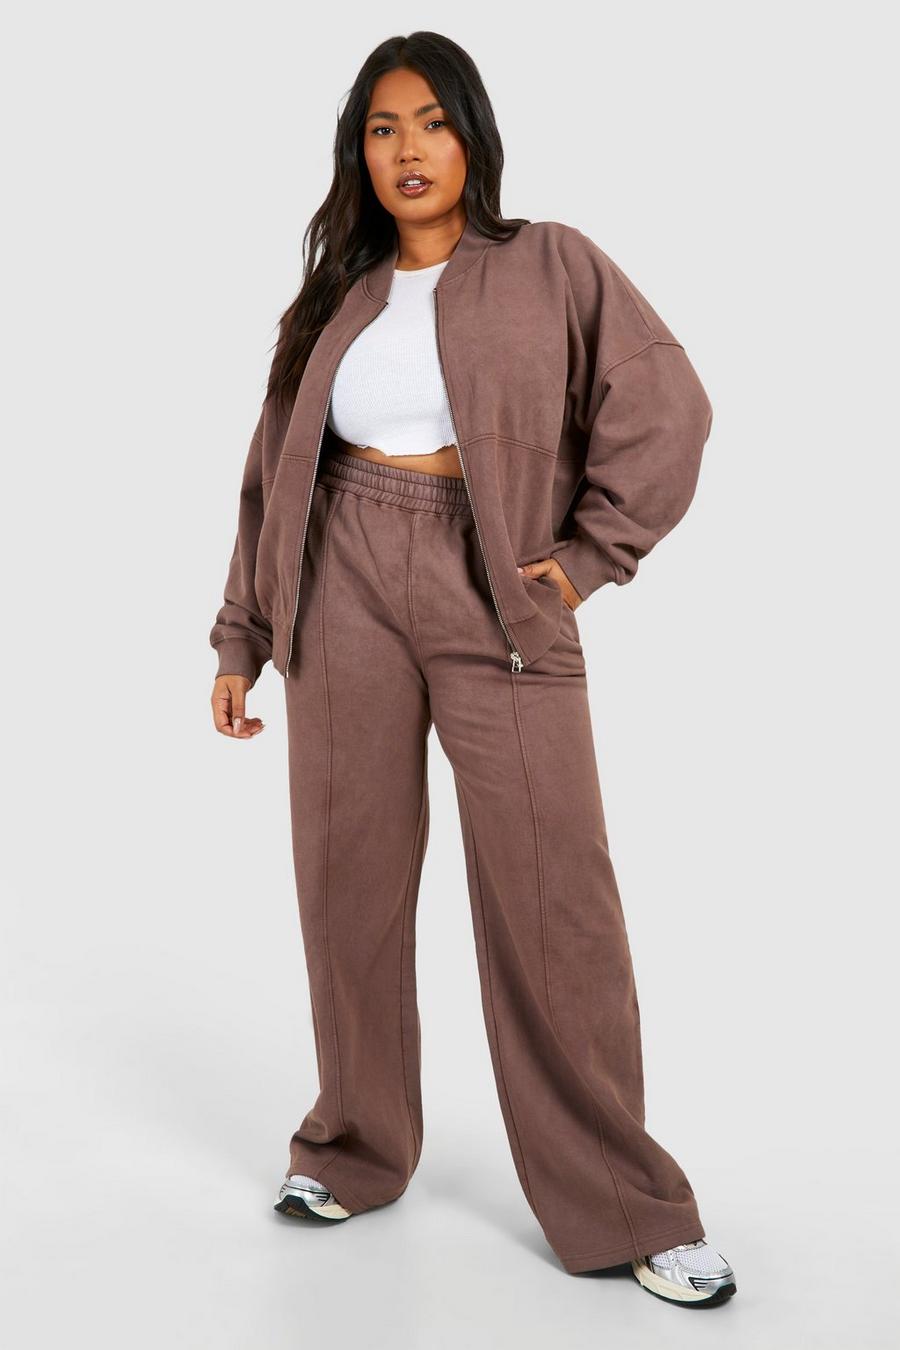 Petite Pants Suit for Women Women Color Leisure Short 2Pc Sweatpants Sets  Suit Sleeve Pocket Home Women Suits Sets Beige at  Women's Clothing  store